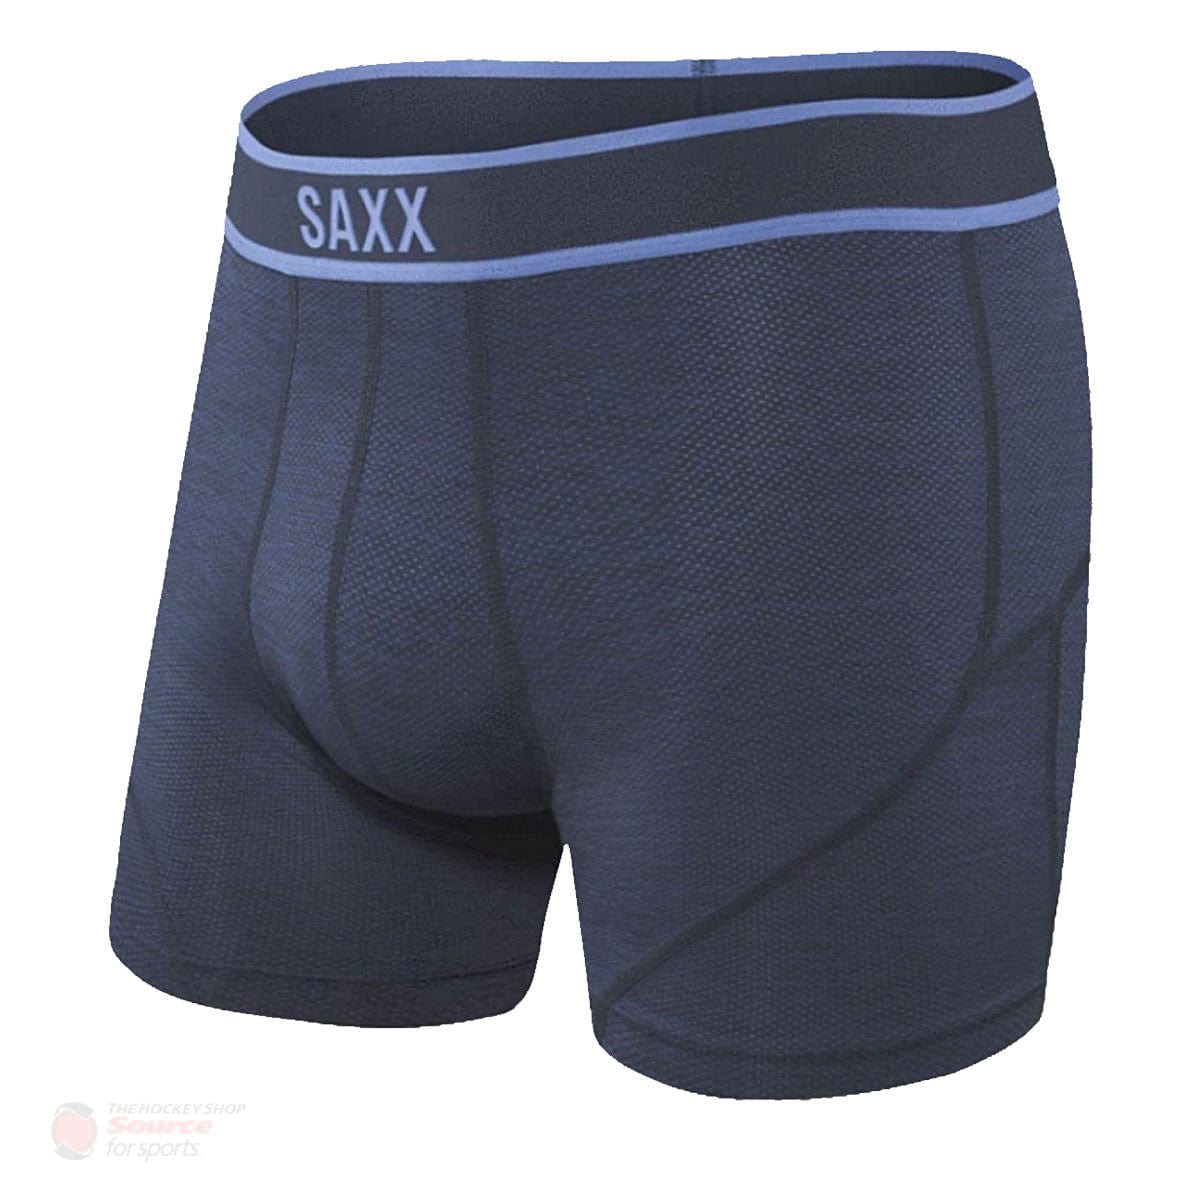 Saxx Kinetic Boxers - Blue Cross Dye